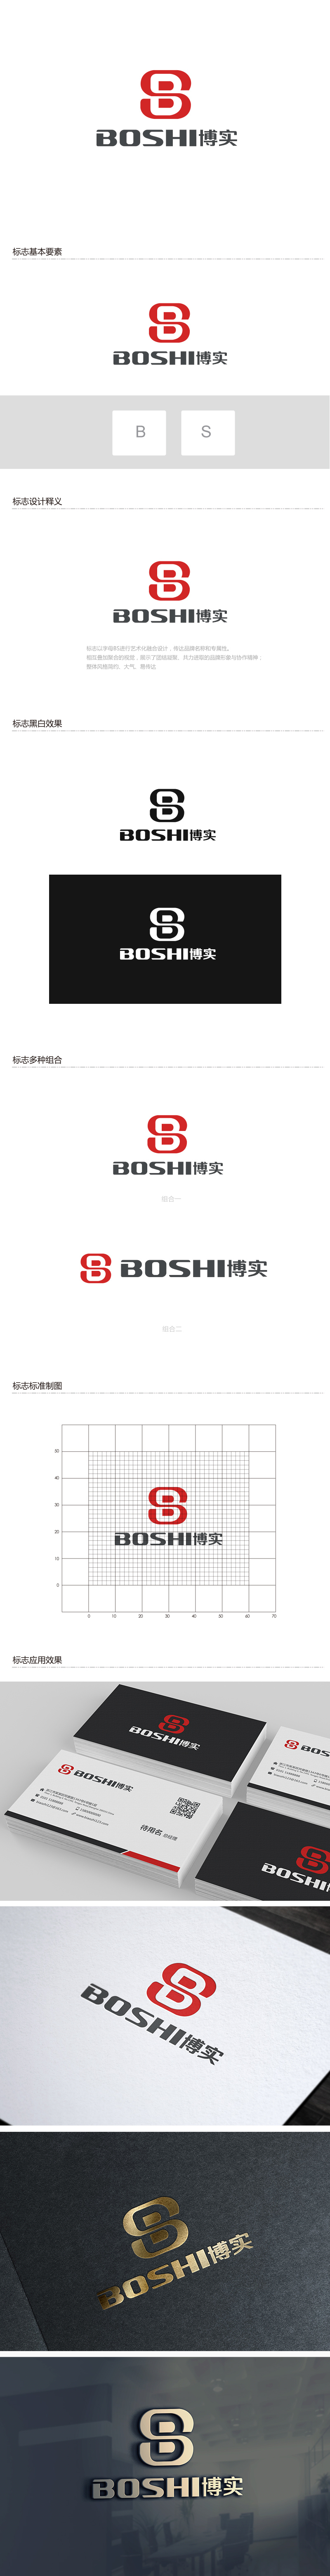 吴晓伟的博实logo设计